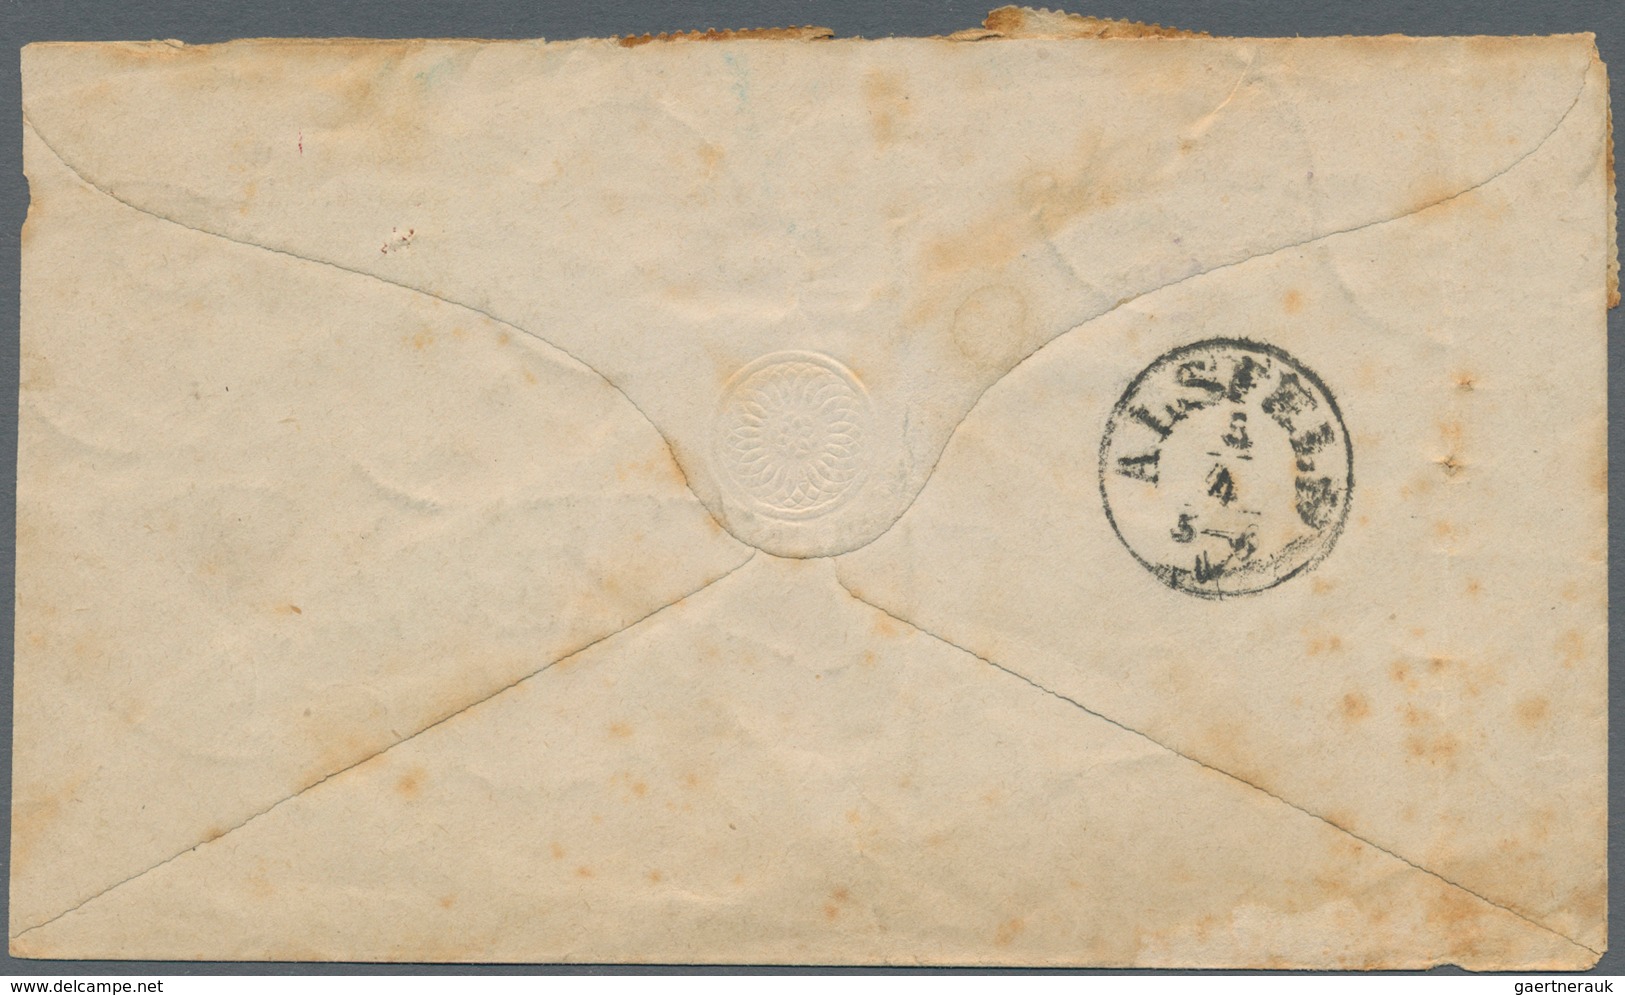 Deutsches Reich - Pfennige: 1875, Auslagenbrief In Seltener Währungsmischfrankatur 1 Groschen Ganzsa - Lettres & Documents